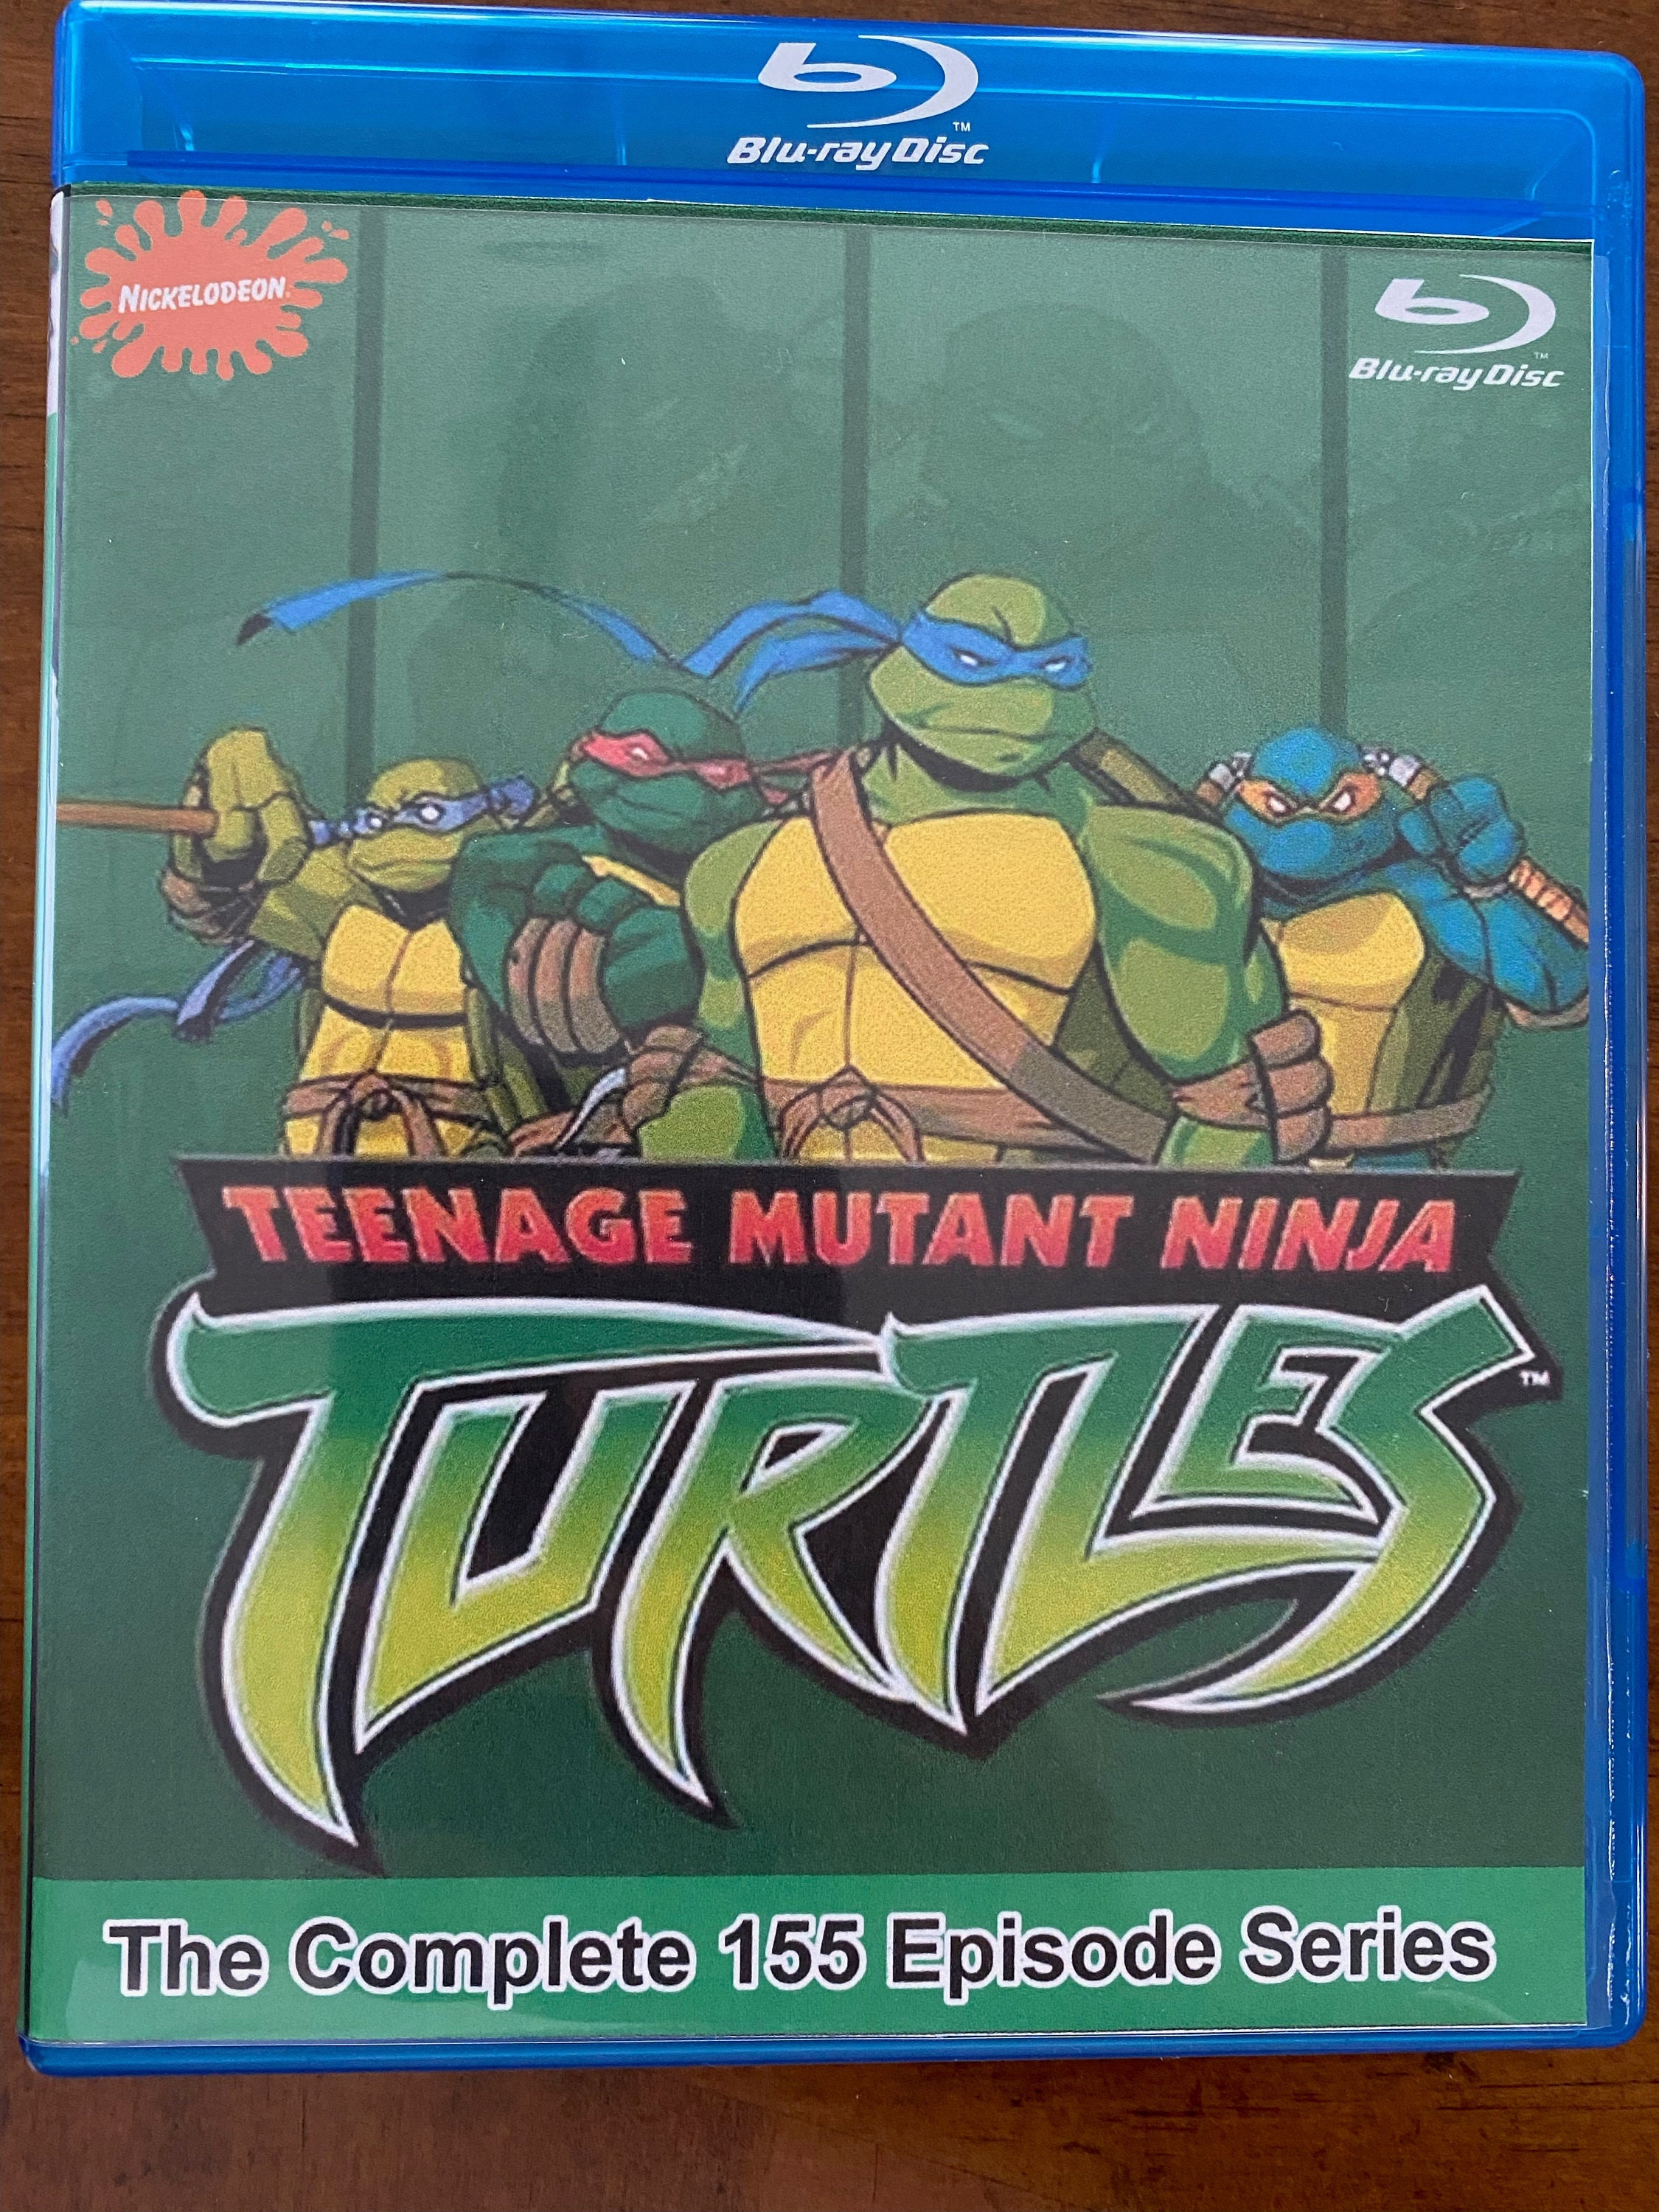 Teenage Mutant Ninja Turtles 2003 Complete TV Series Blu Ray - Etsy Canada